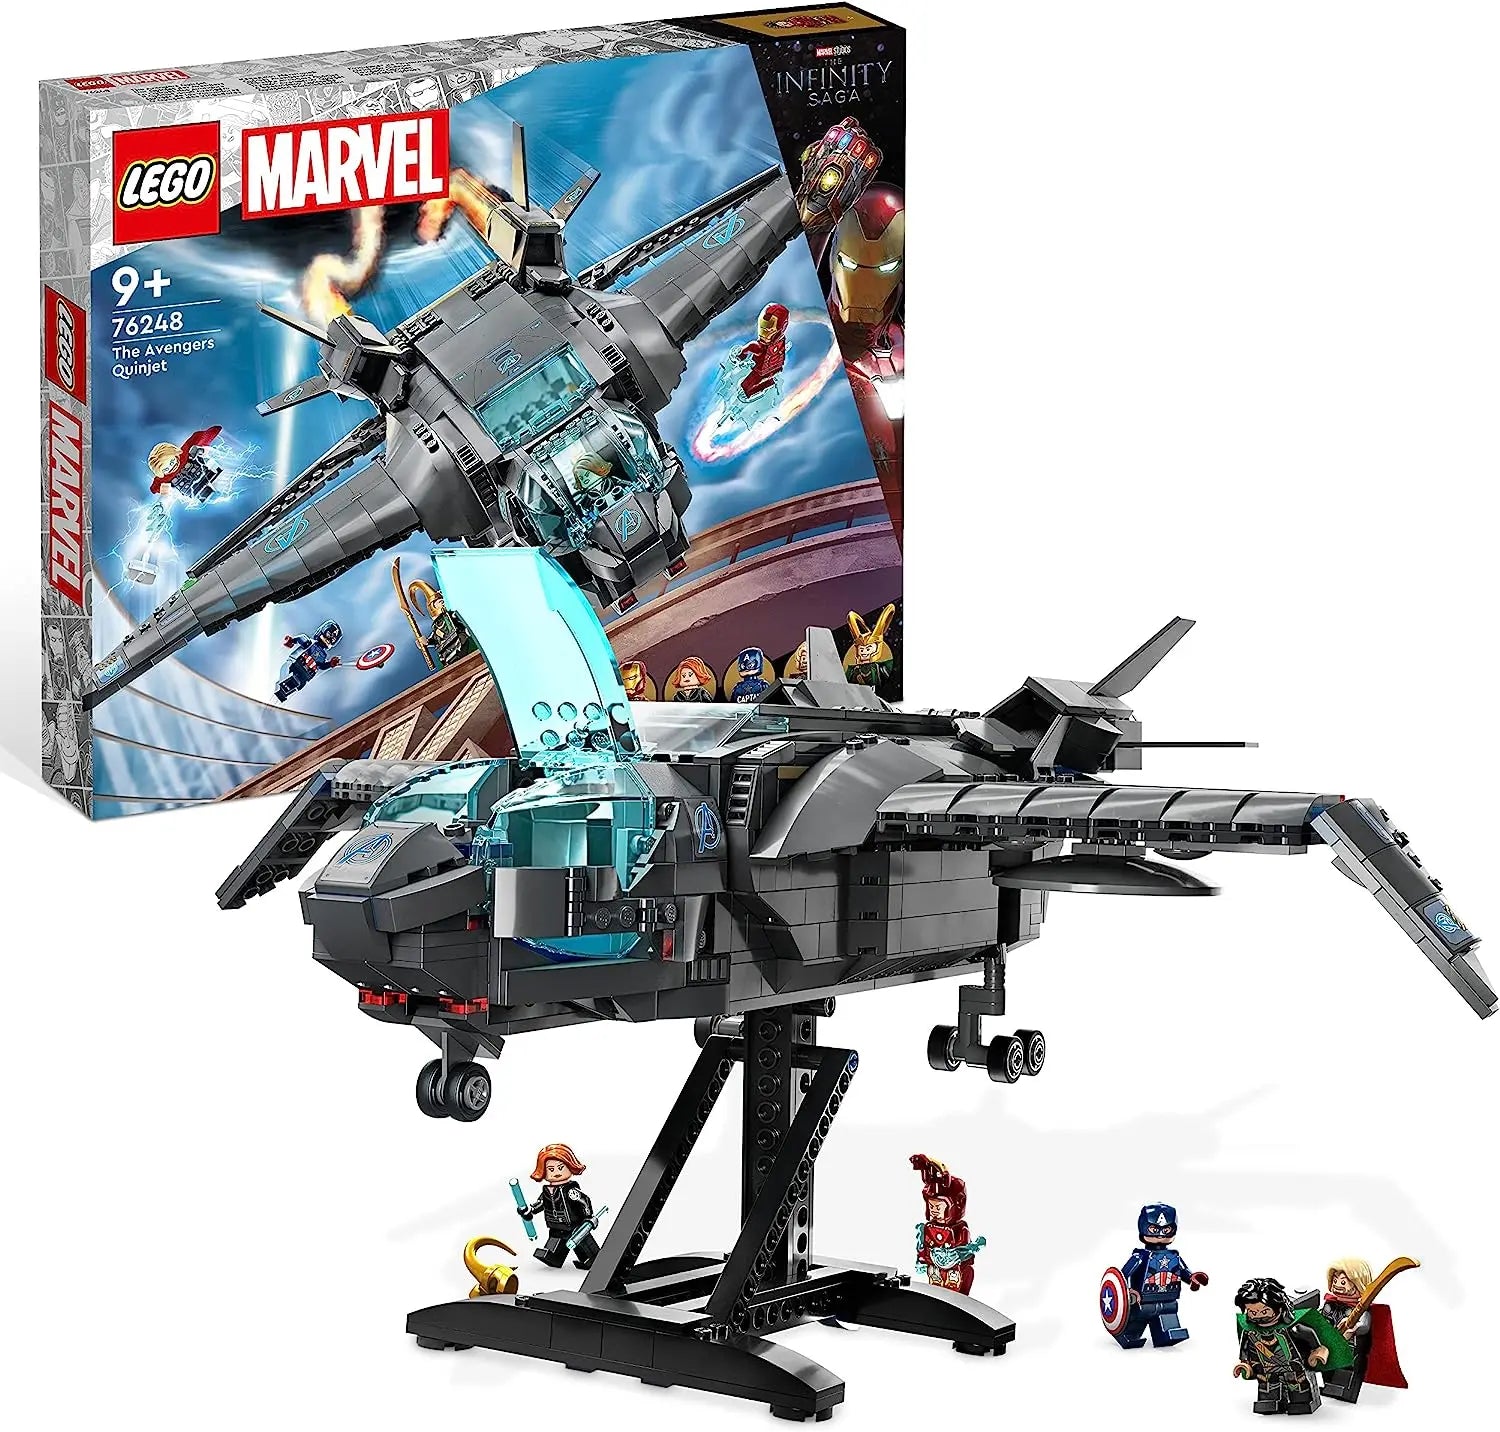 jouet LEGO Marvel 76248 Le Quinjet des Avengers, Jouet de Vaisseau Spatial pour Noël, avec Minifigurines Thor, Iron Man, Black Widow lego